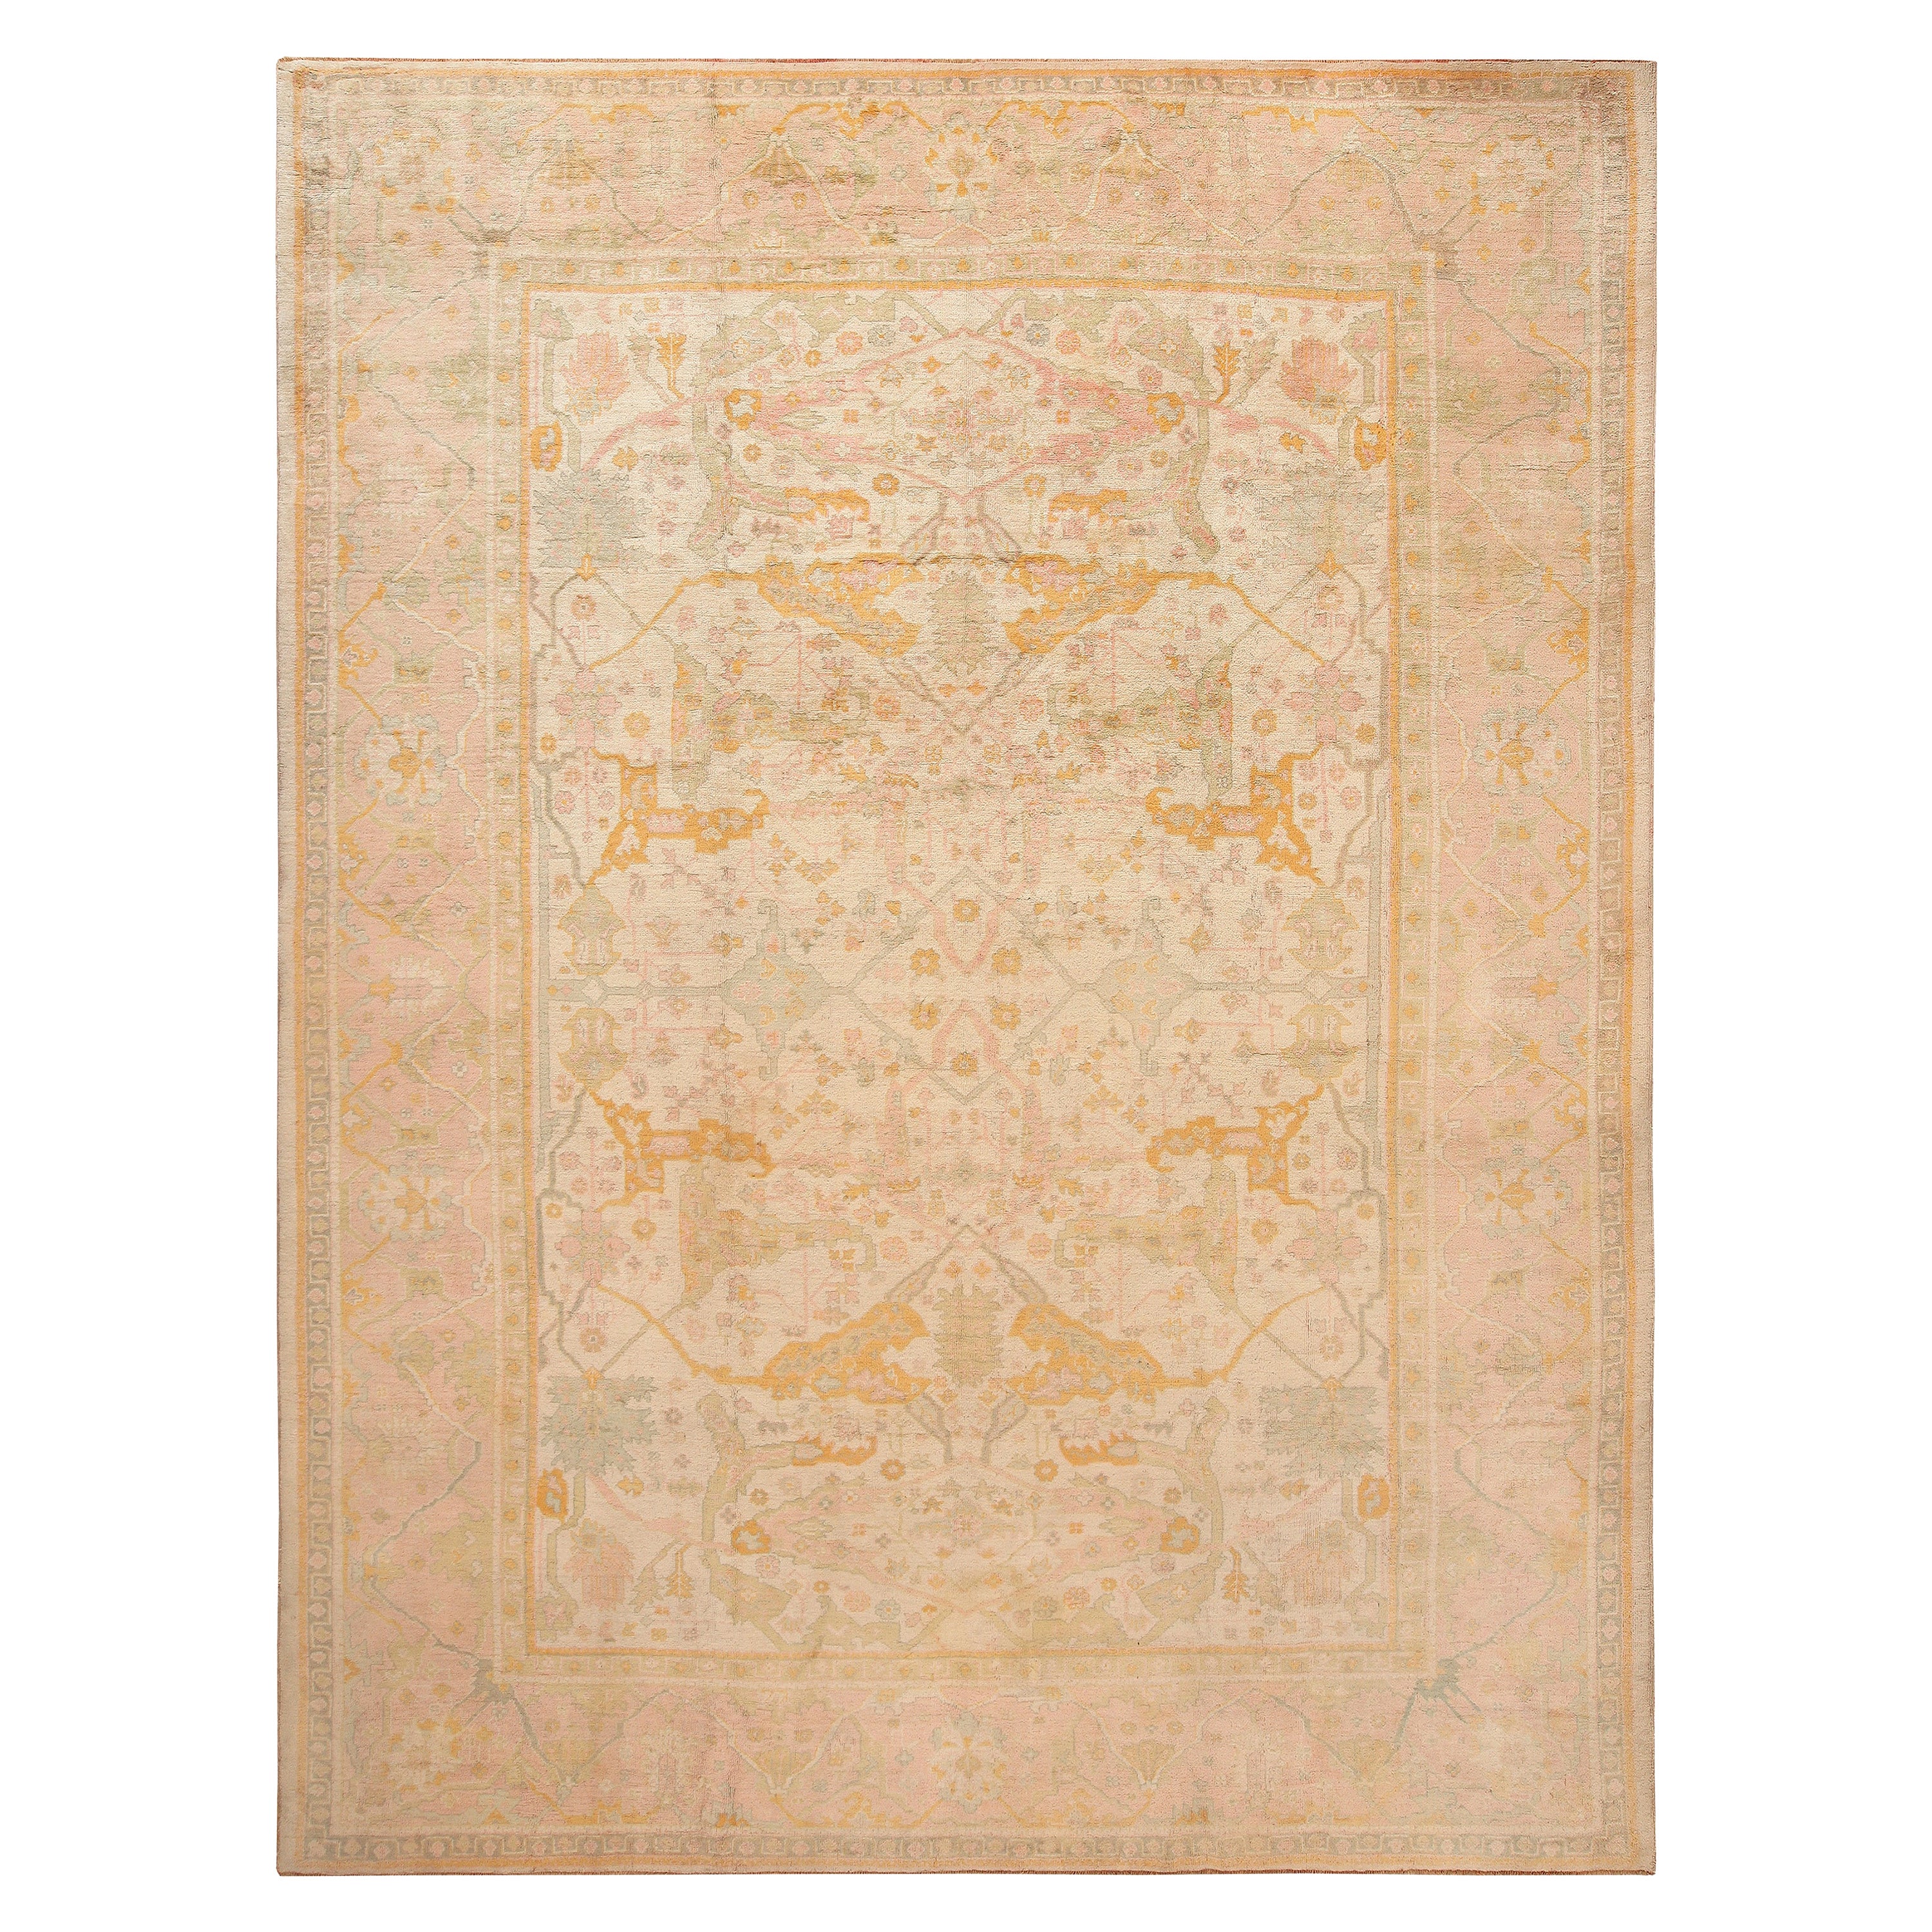 Magnifique tapis turc ancien Oushak doux et décoratif 11'6" x 15'